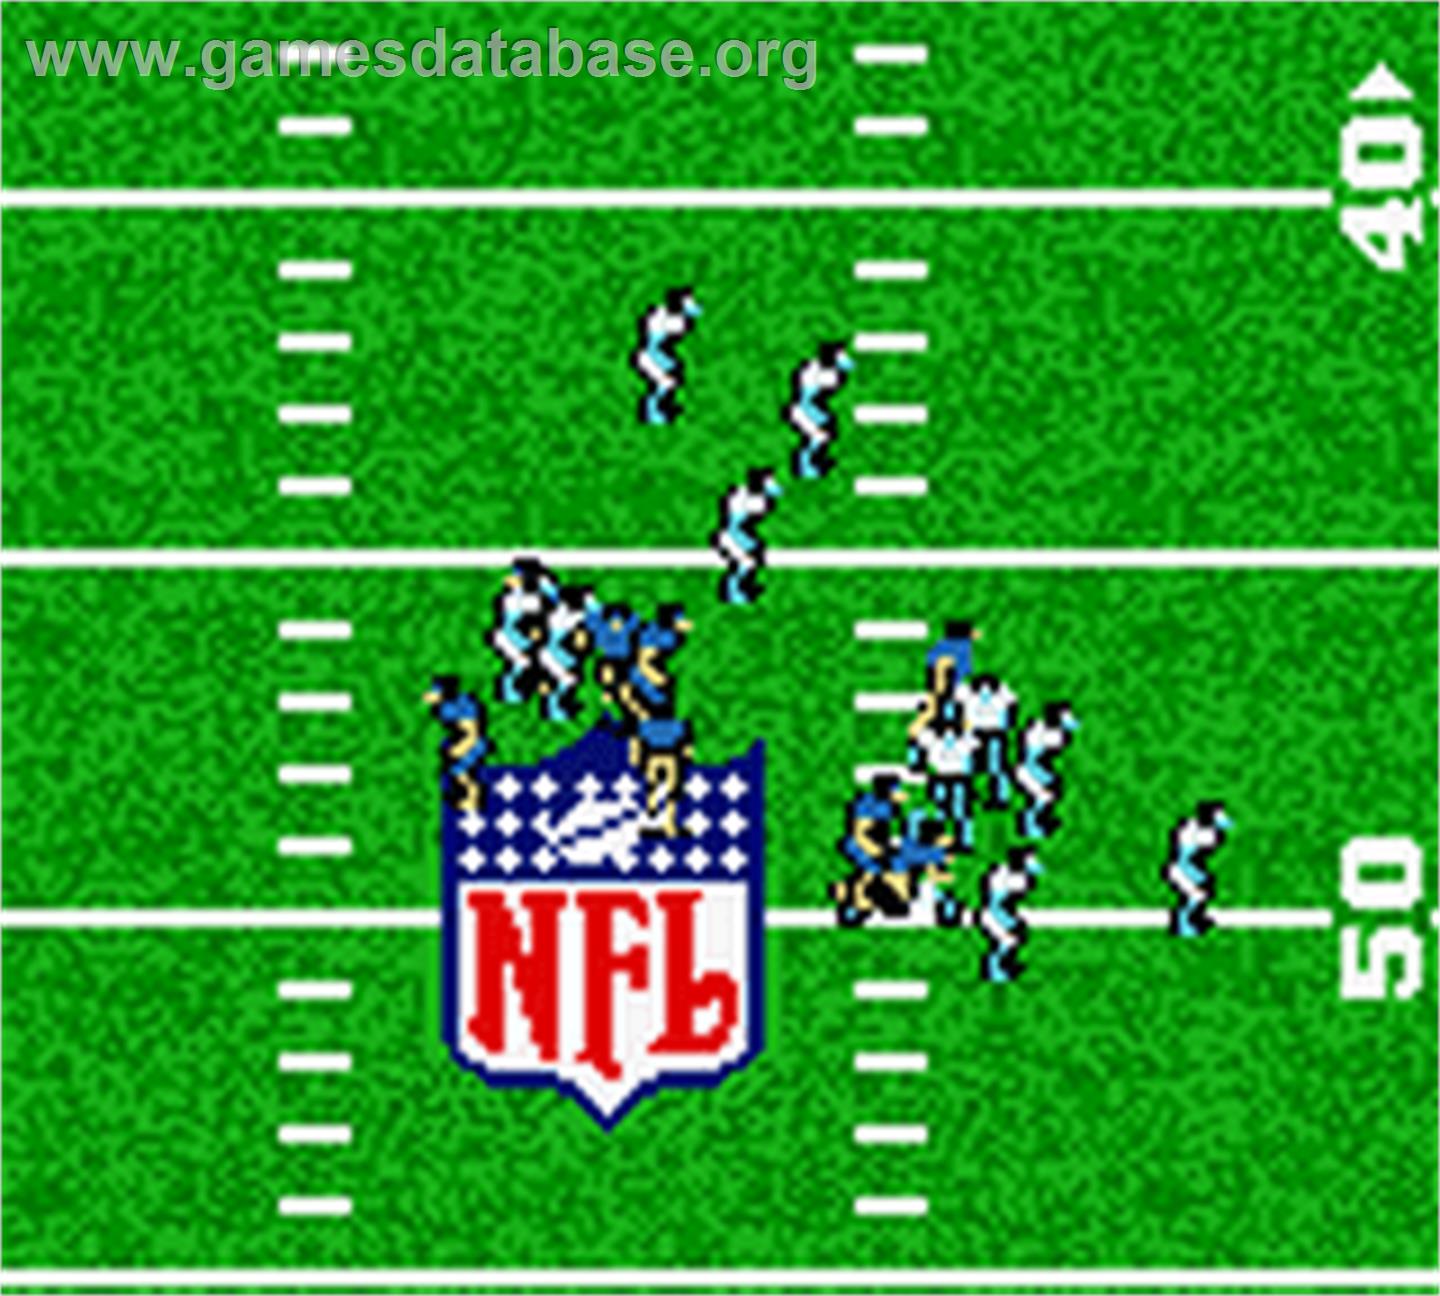 Madden NFL 2001 - Nintendo Game Boy Color - Artwork - In Game